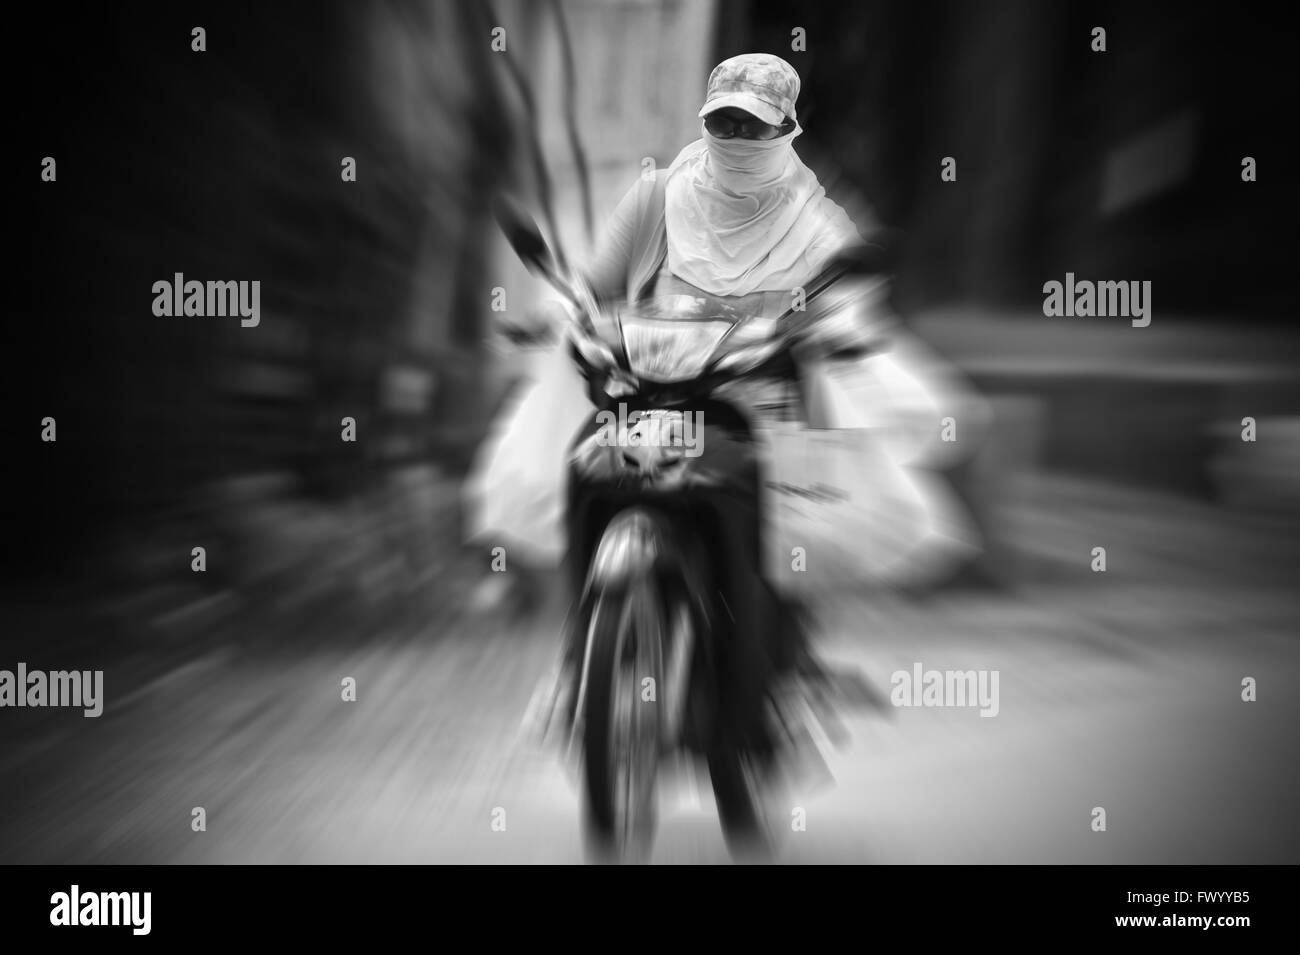 223 / Scooter: ASIEN, PHILIPPINEN, SIQUIJOR ISLAND, 03.03.2016: Sonnenschutz auf dem Motorroller. Stock Photo